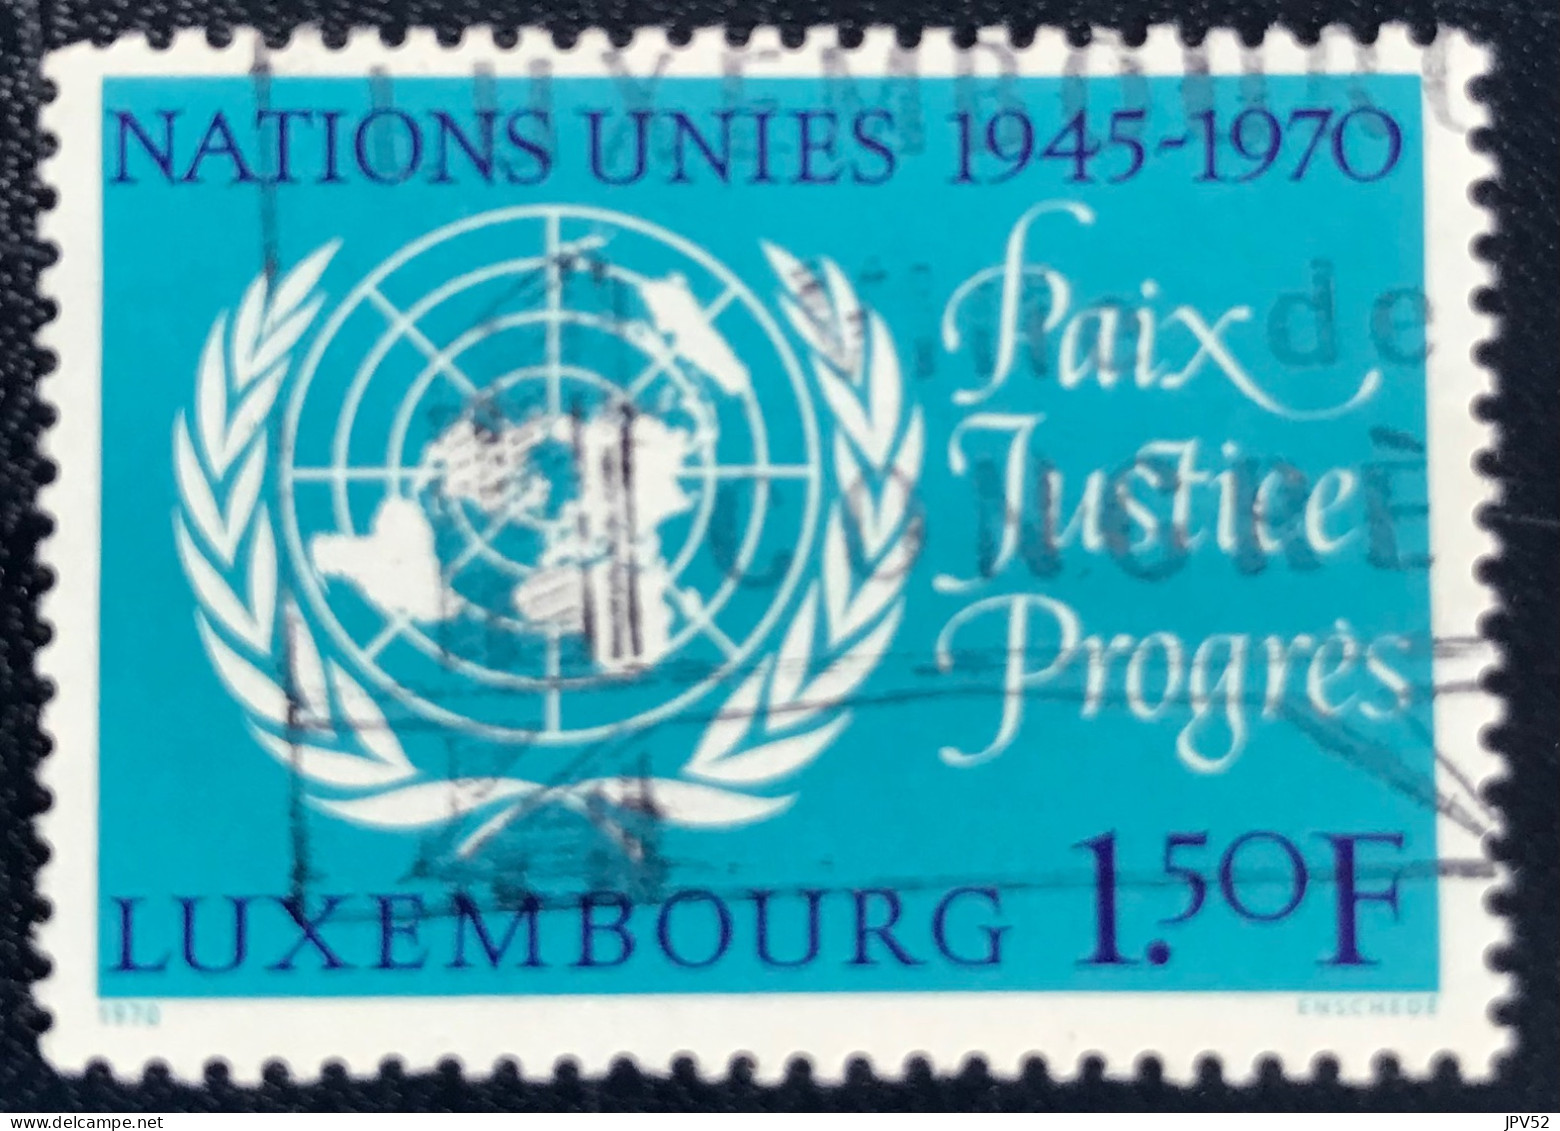 Luxembourg - Luxemburg - C18/32 - 1970 - (°)used - Michel 813 - Embleem VN - Gebruikt